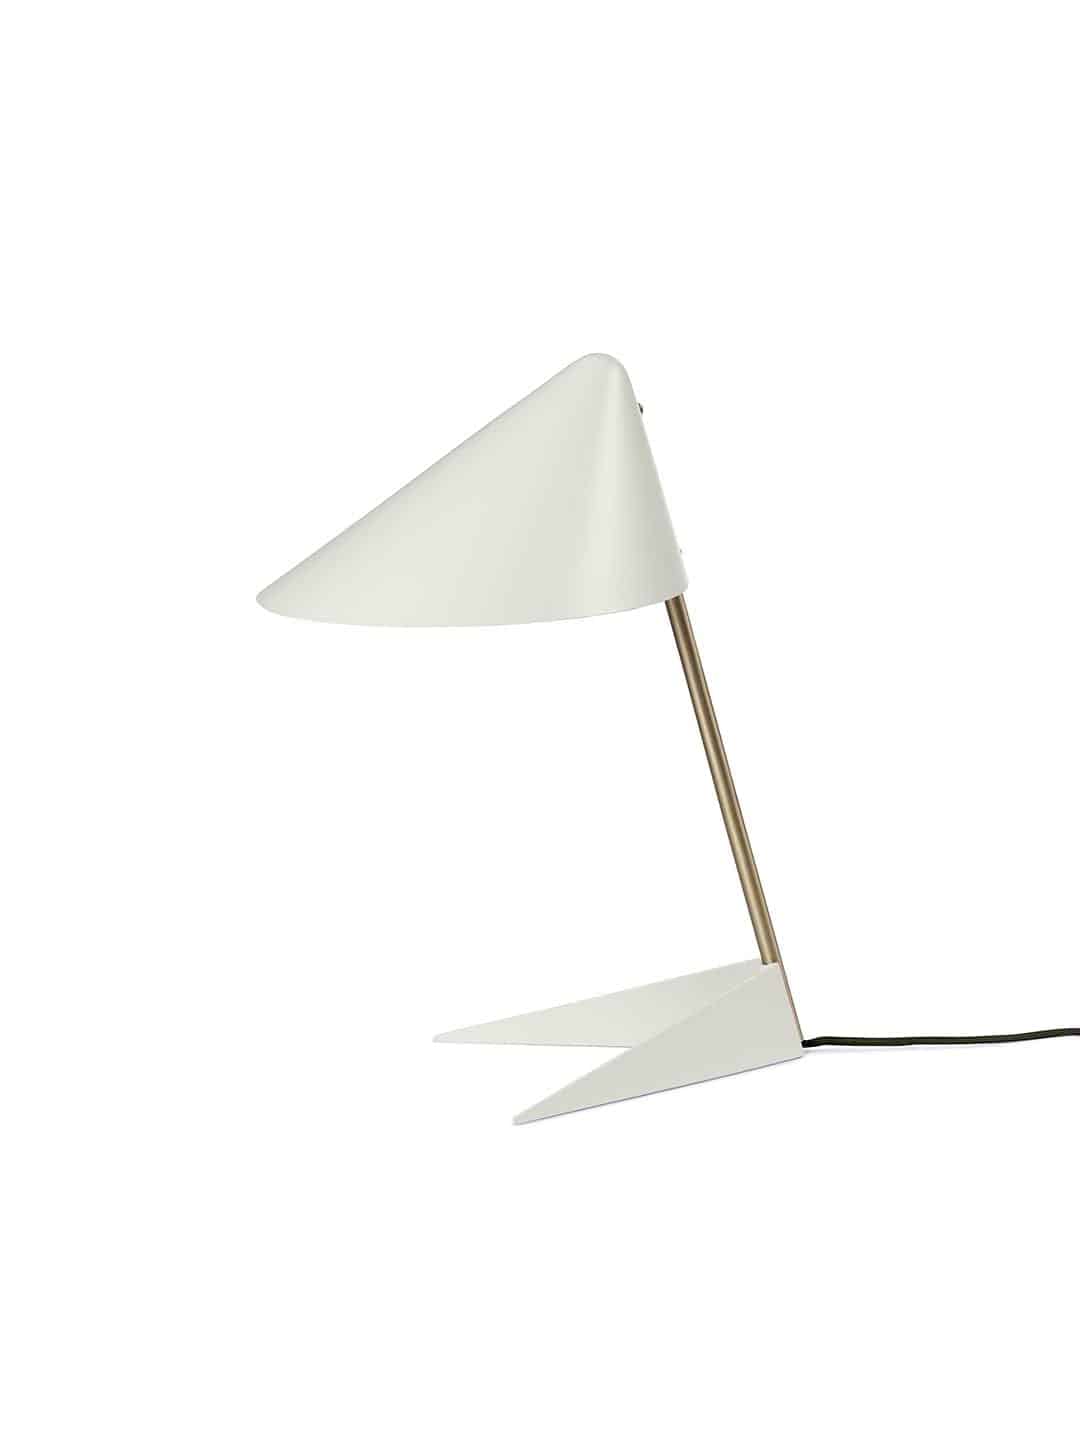 Настольная лампа Warm Nordic Ambience теплого белого цвета с латунной ножкой